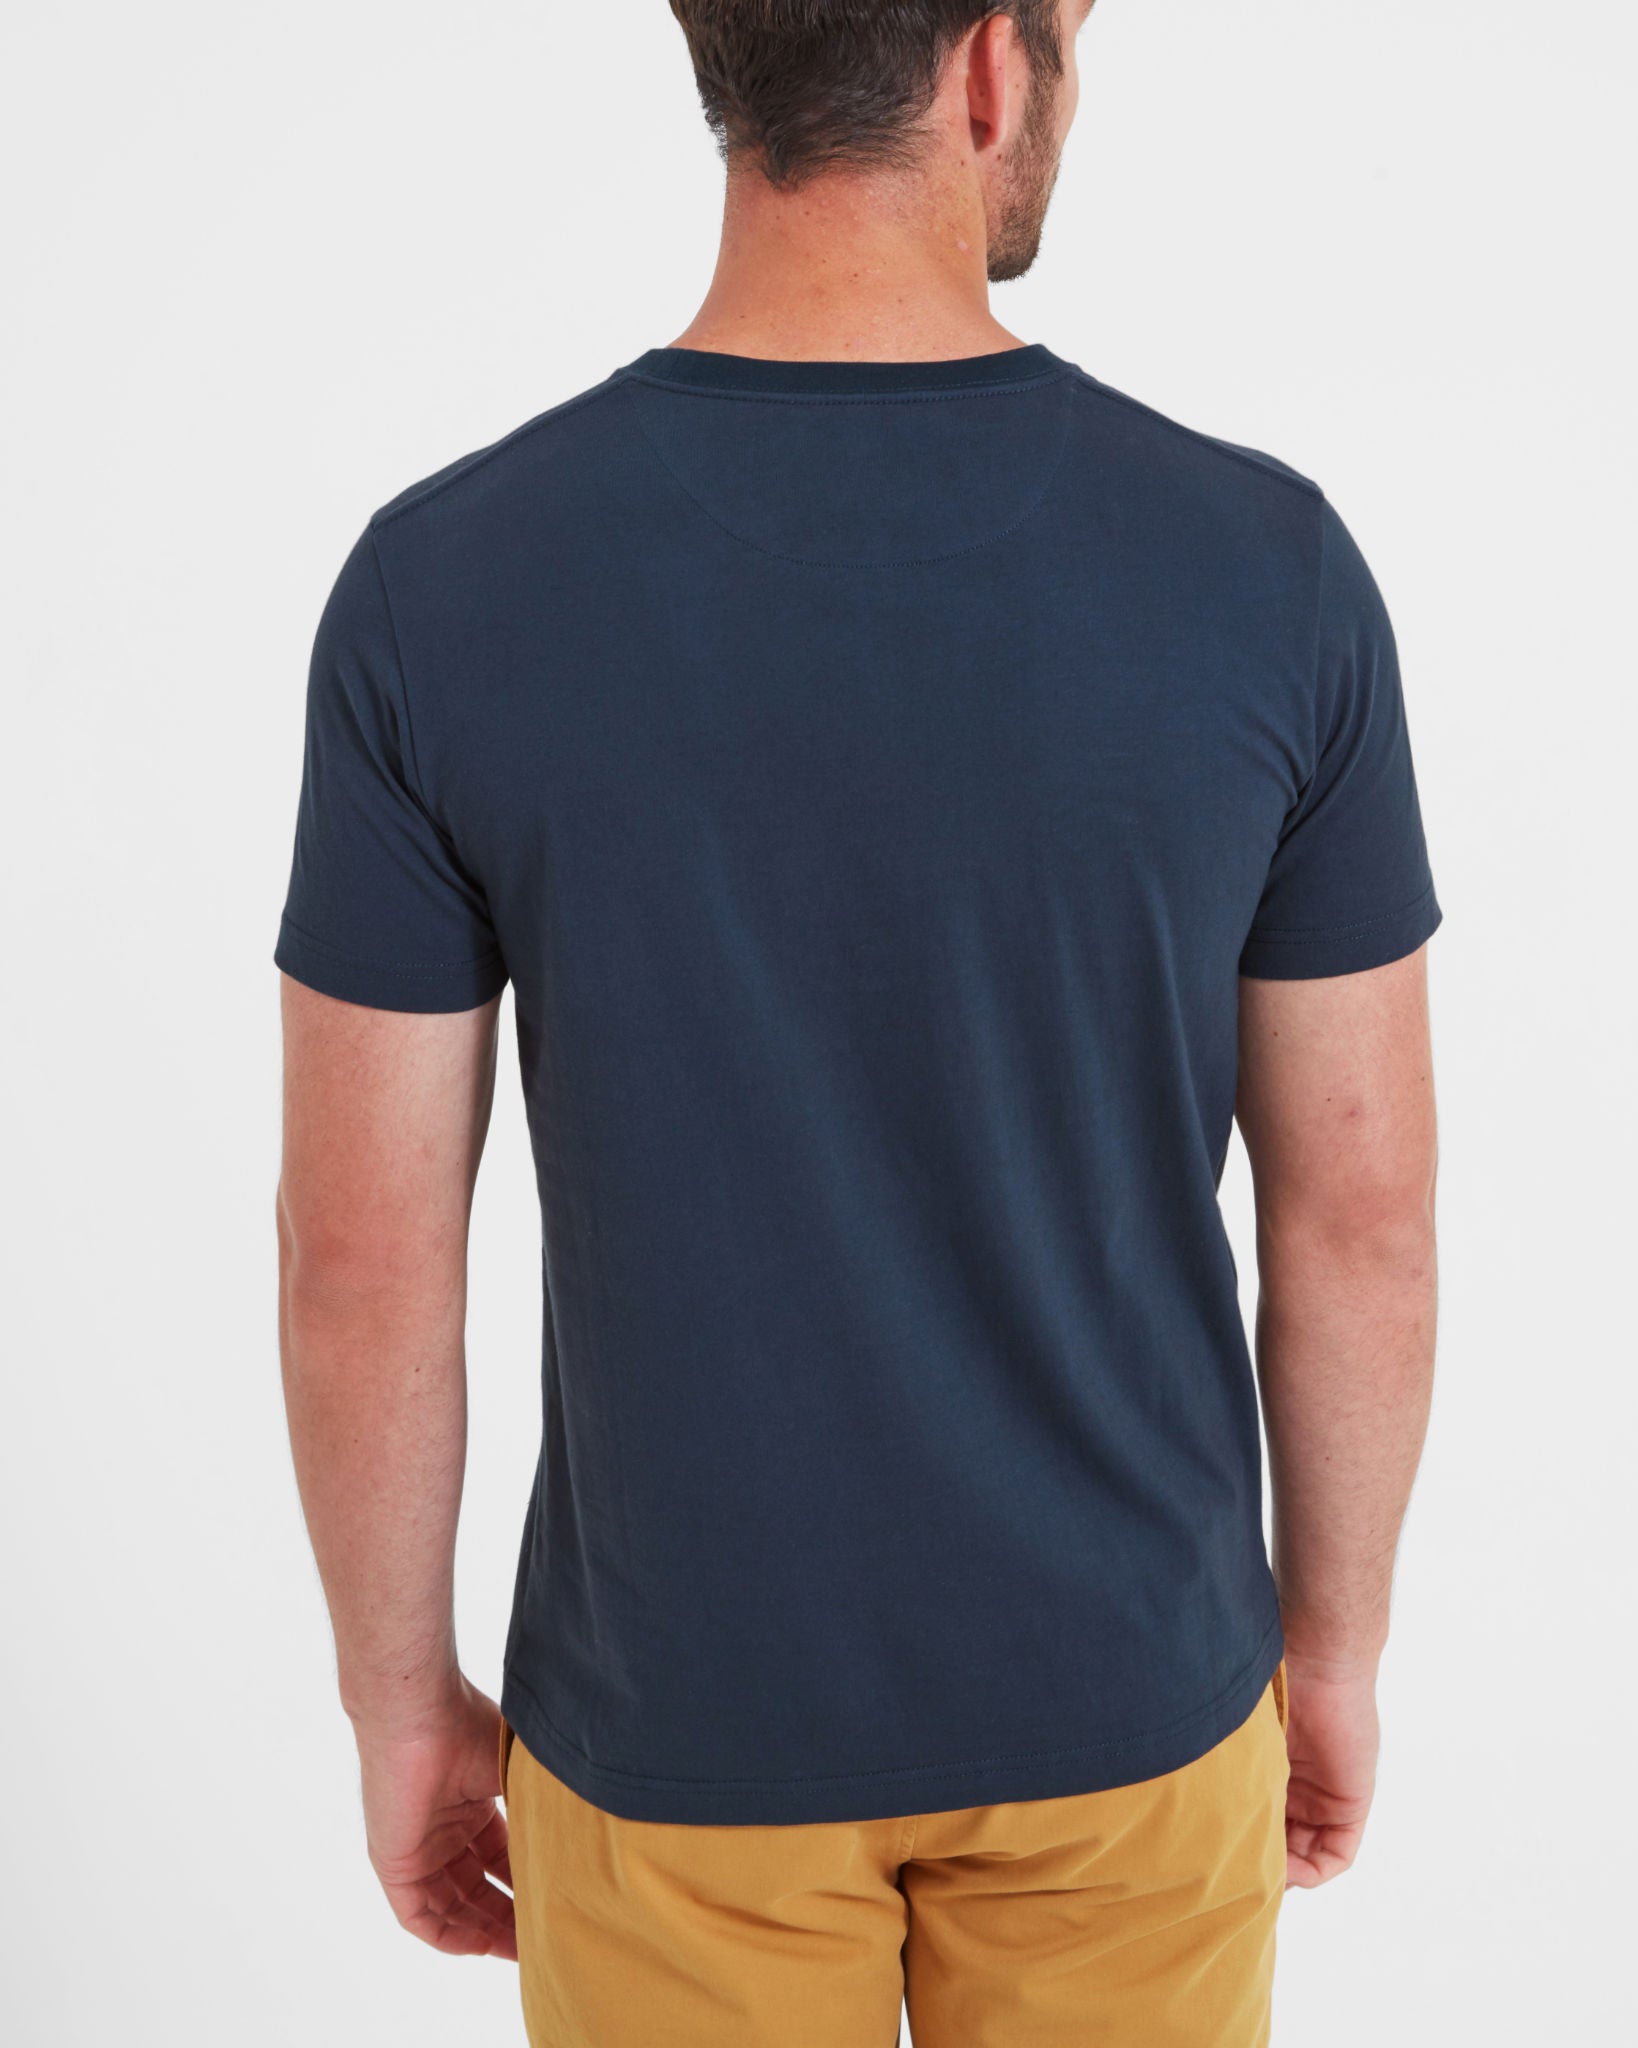 Trevone T-shirt - Navy